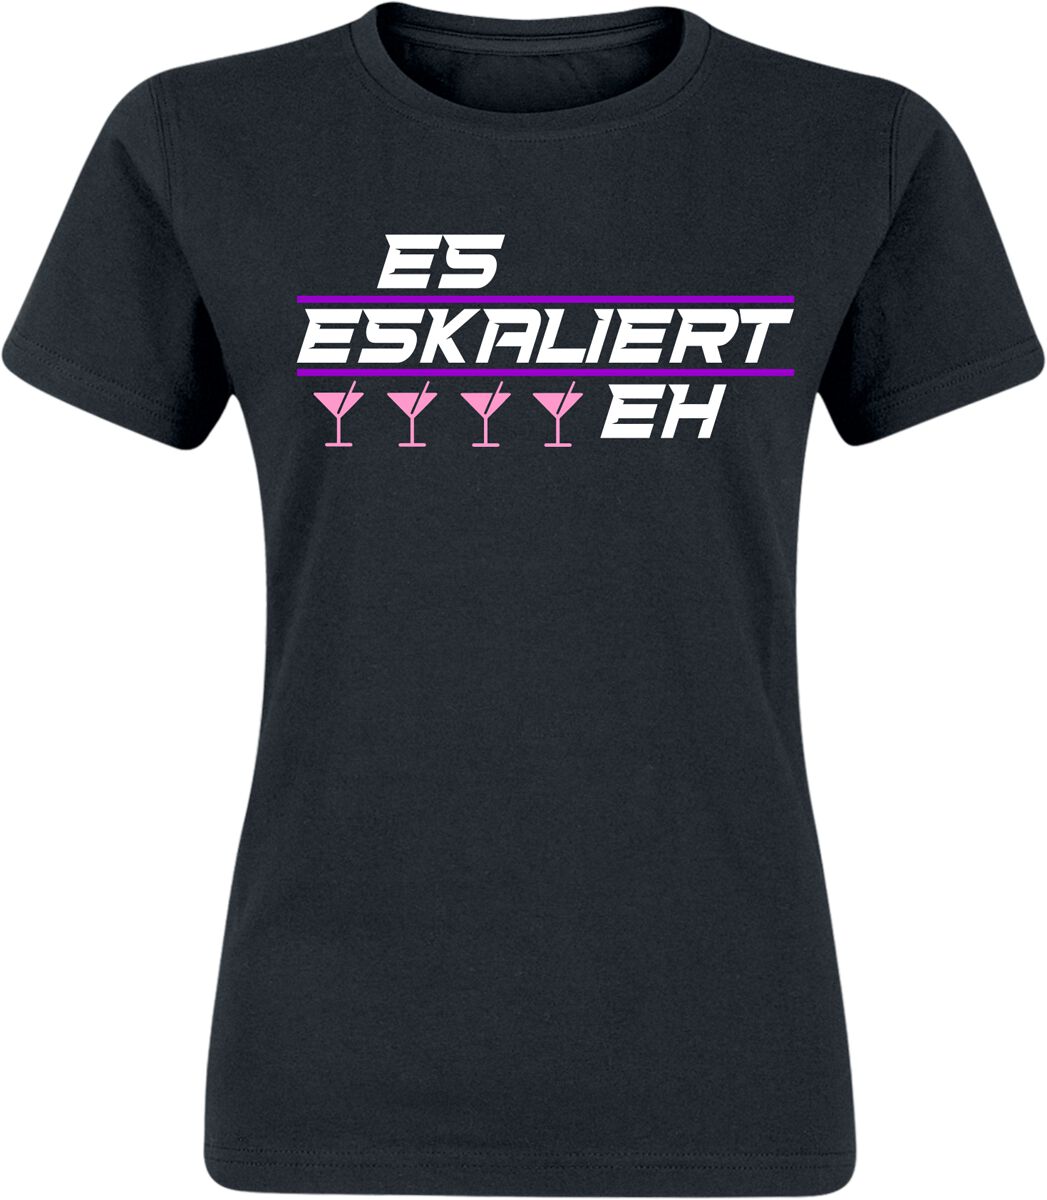 Alkohol & Party T-Shirt - Es eskaliert eh! - S bis XXL - für Damen - Größe XL - schwarz